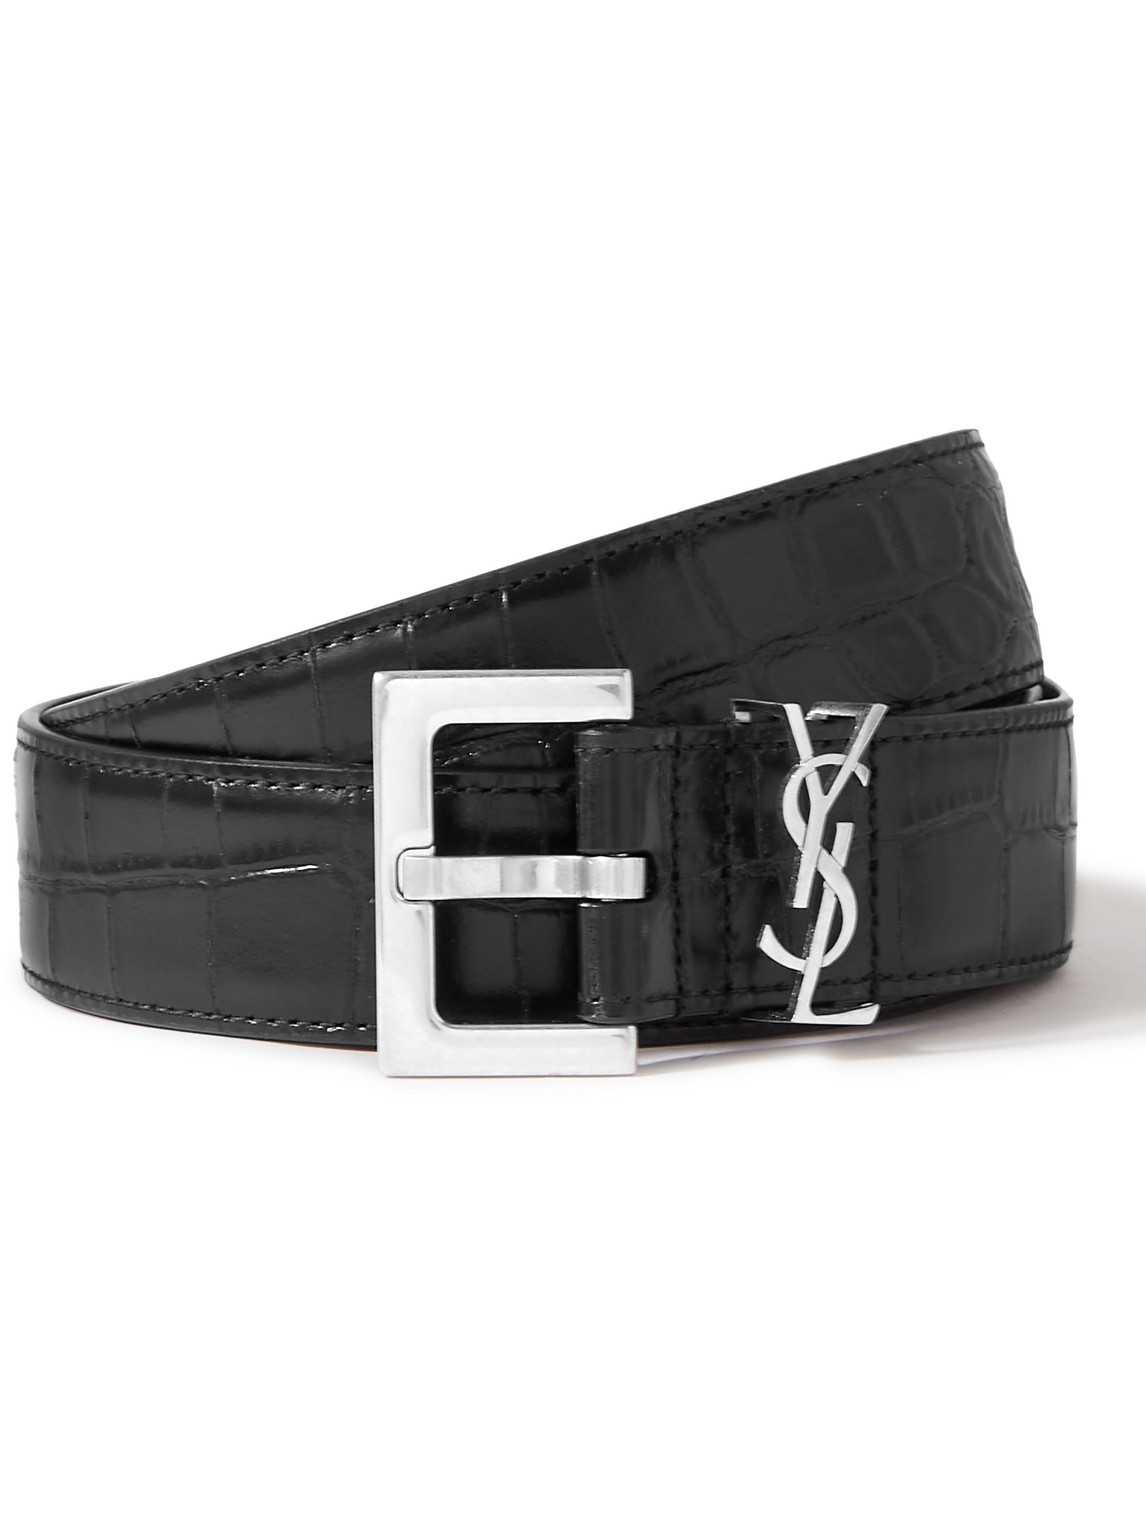 Monogram Patent Leather Belt in Black - Saint Laurent